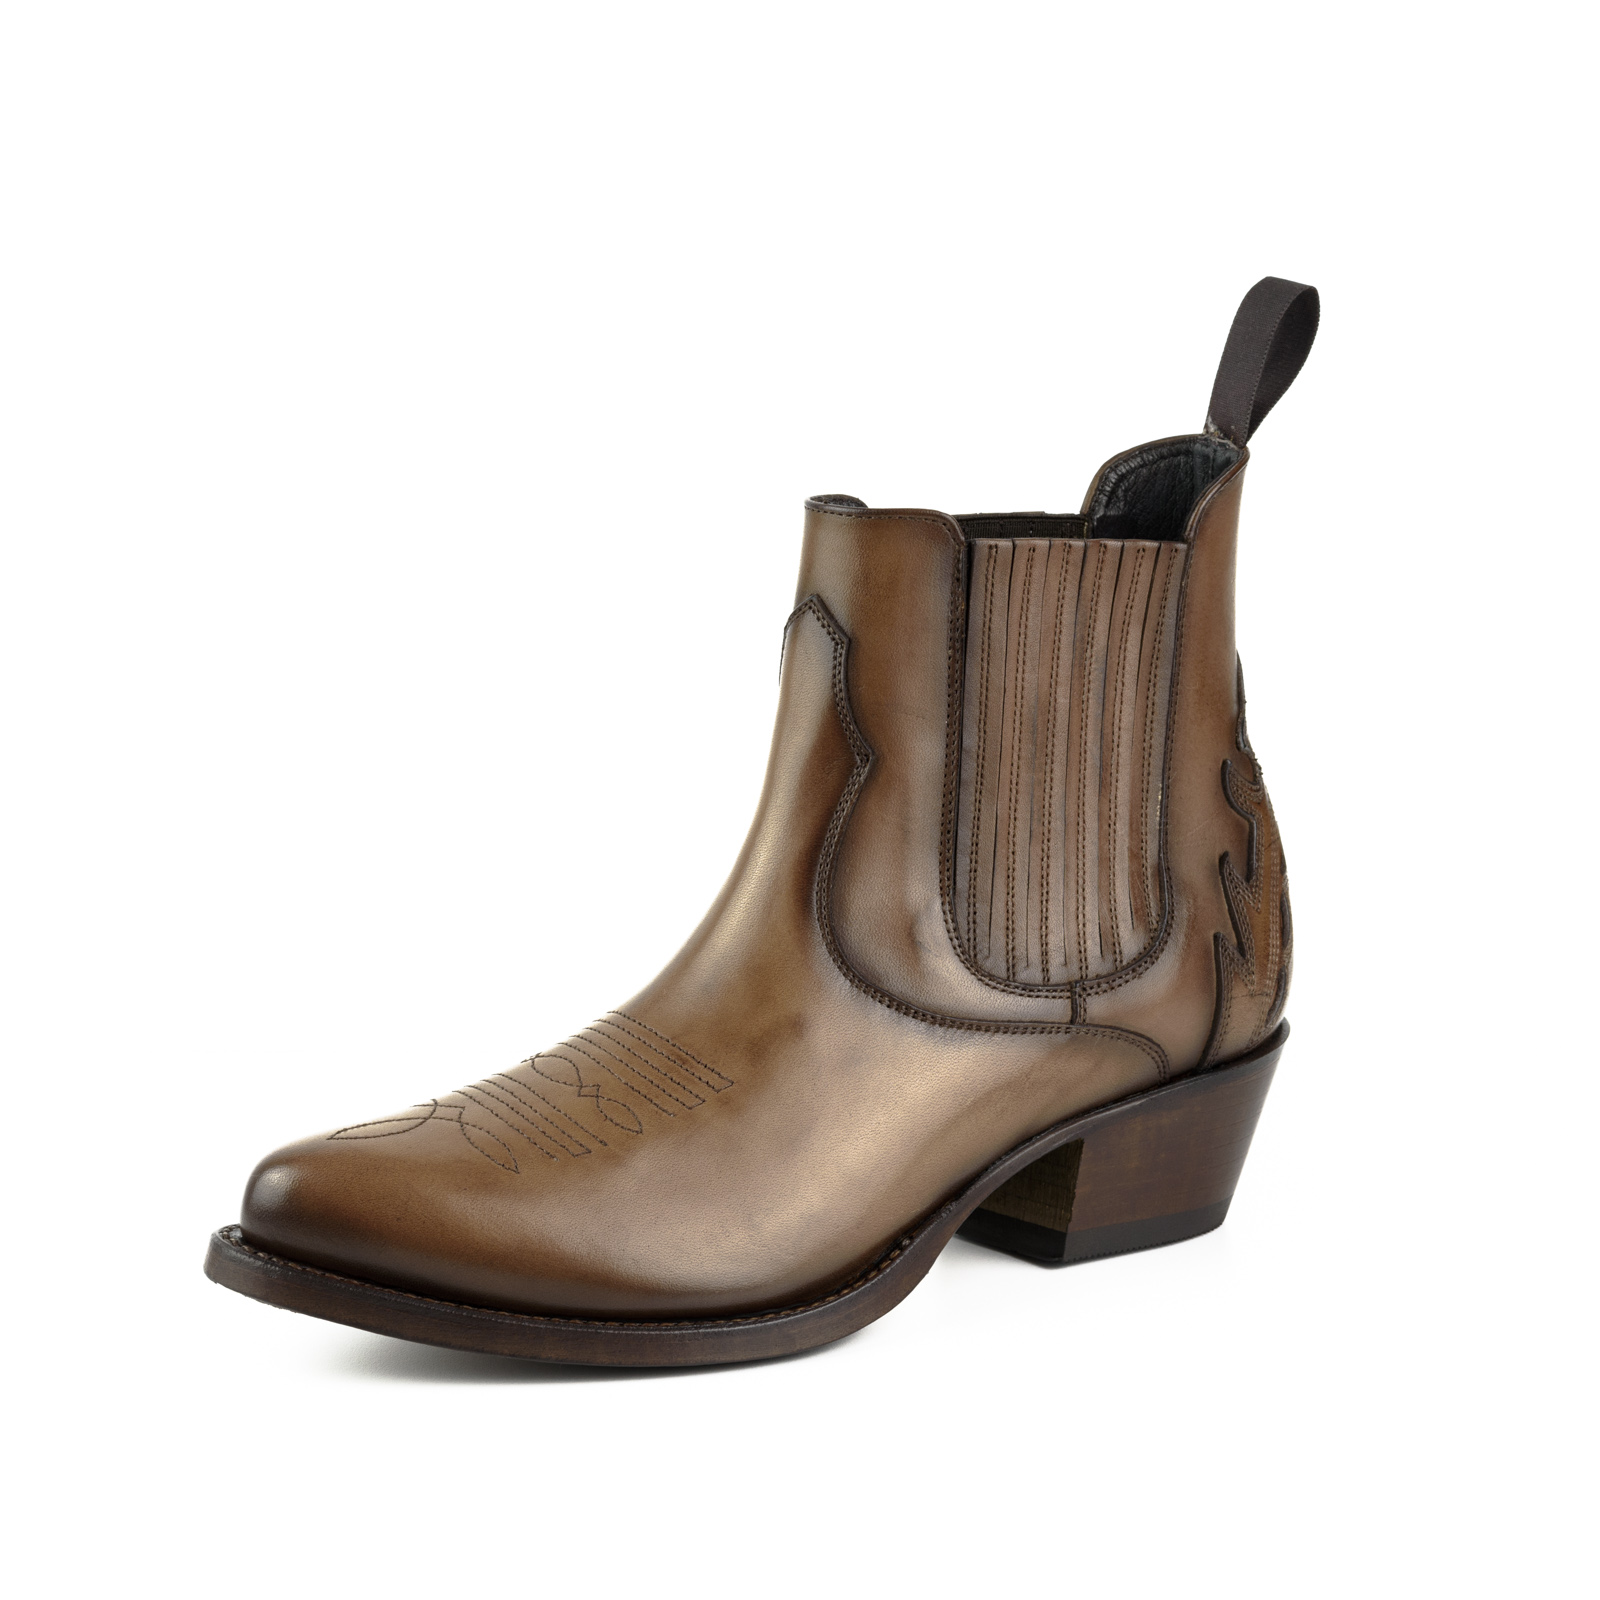 mayura-boots-modelo-marilyn-2487-cuero12-1